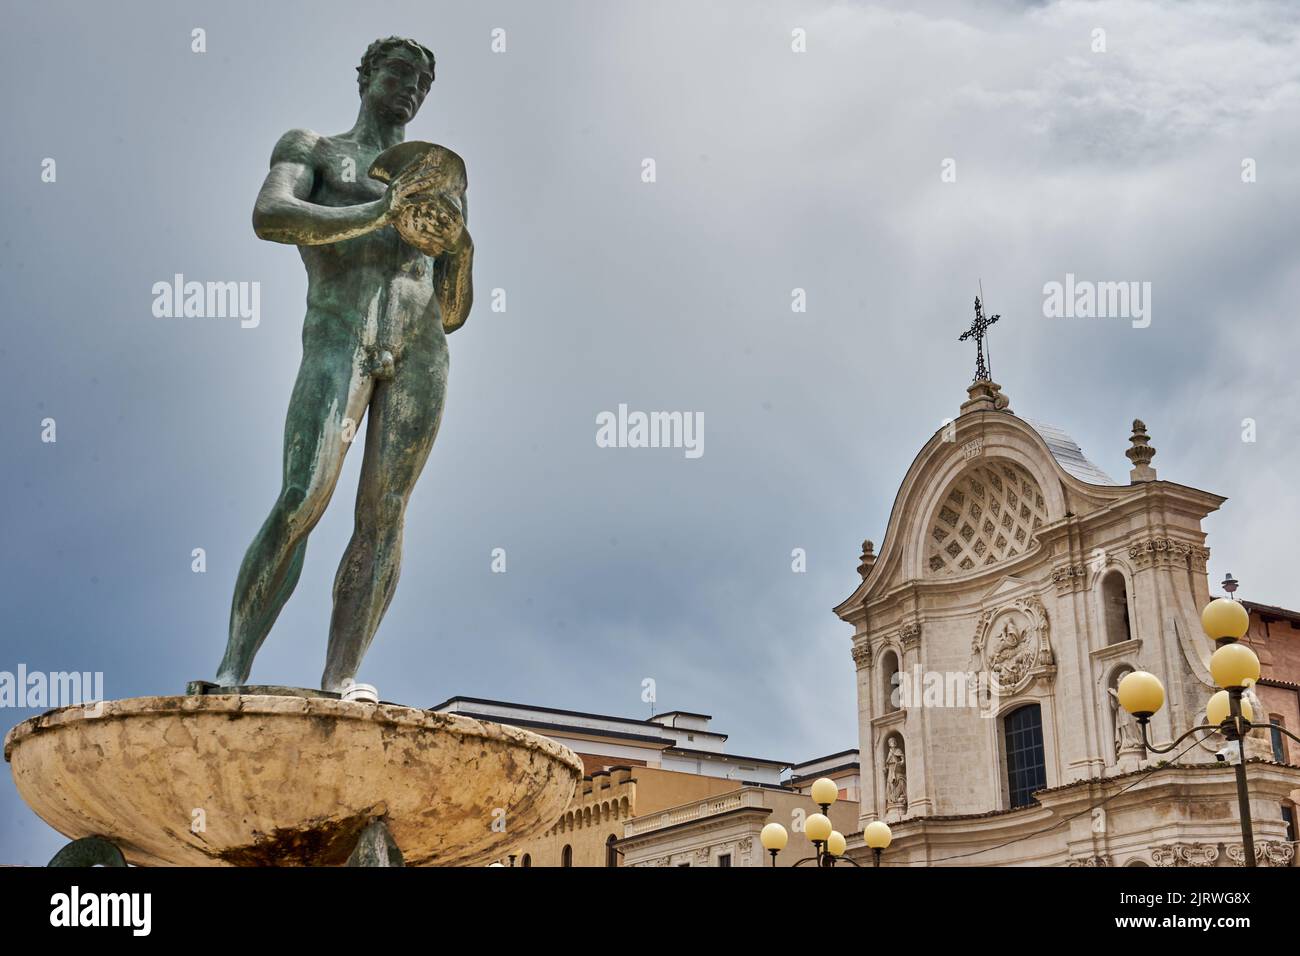 Kathedrale von LAquila, Duomo dell Aquila, Cattedrale San Massimo, vorne Brunnen Fontana vecchia, Piazza del Duomo, L’Aquila, Abruzzen, Italien Stock Photo